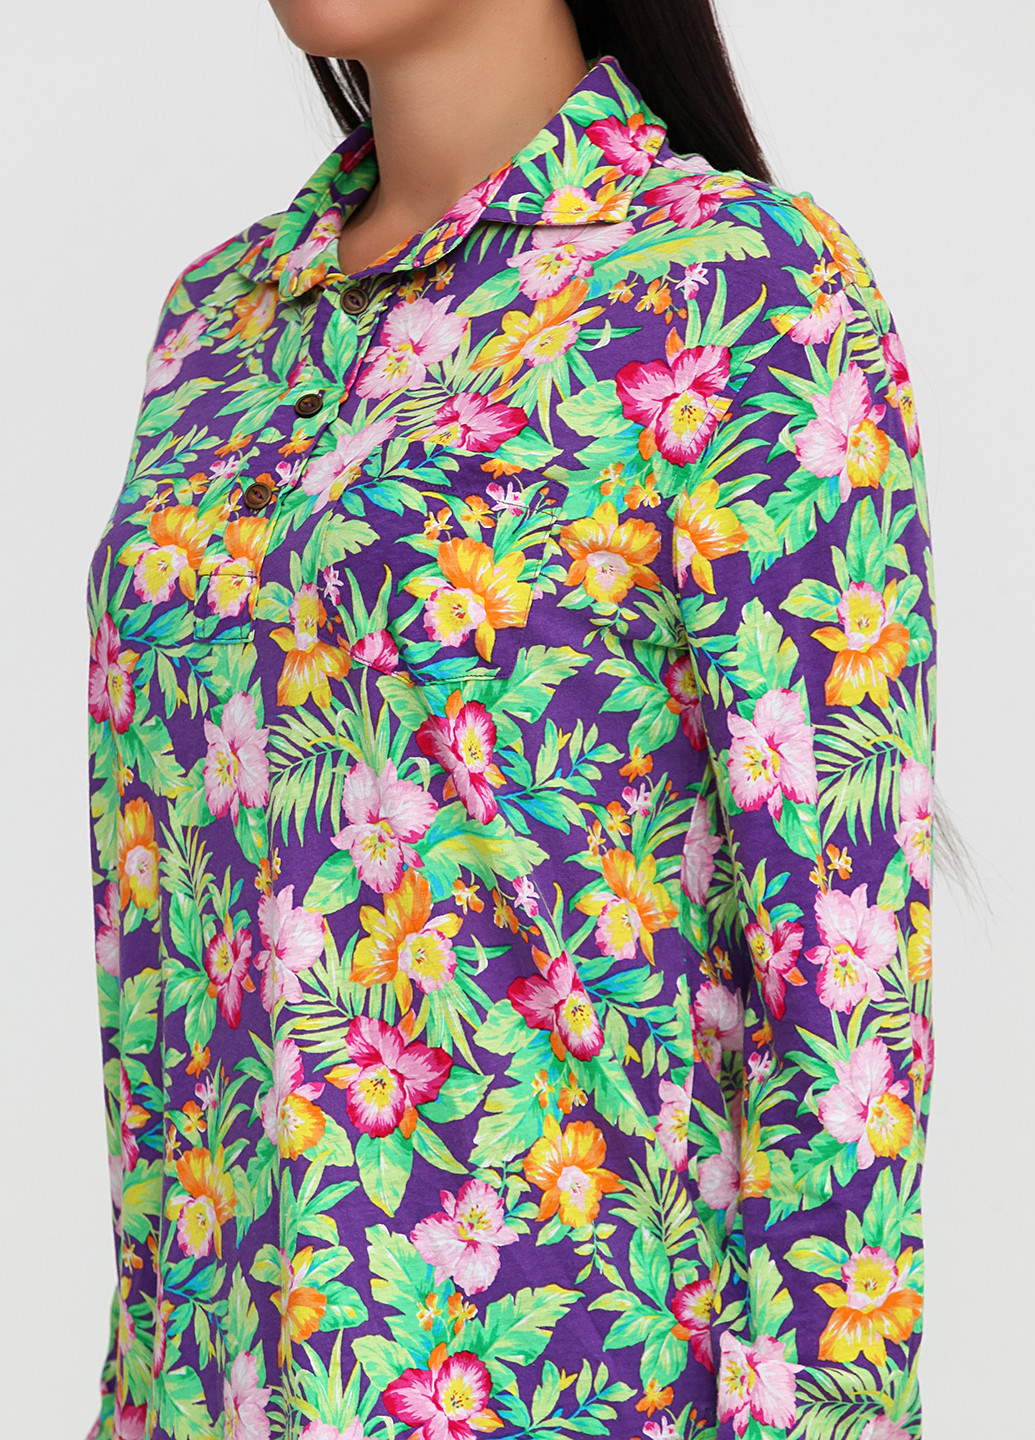 Цветная женская футболка-поло Ralph Lauren с рисунком